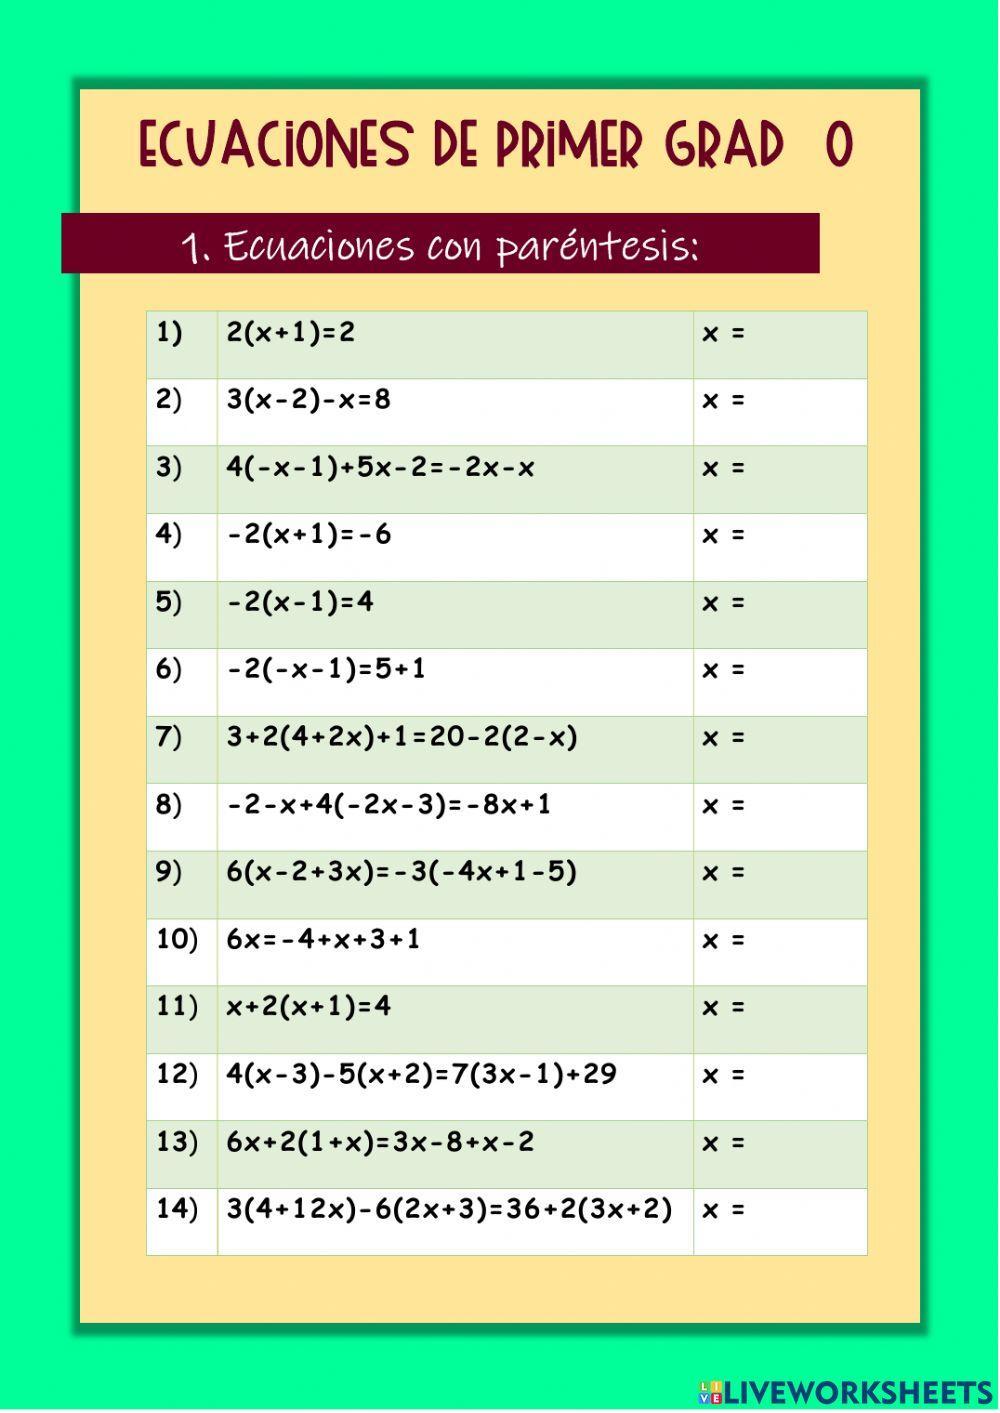 Ecuaciones de primer grado con paréntesis